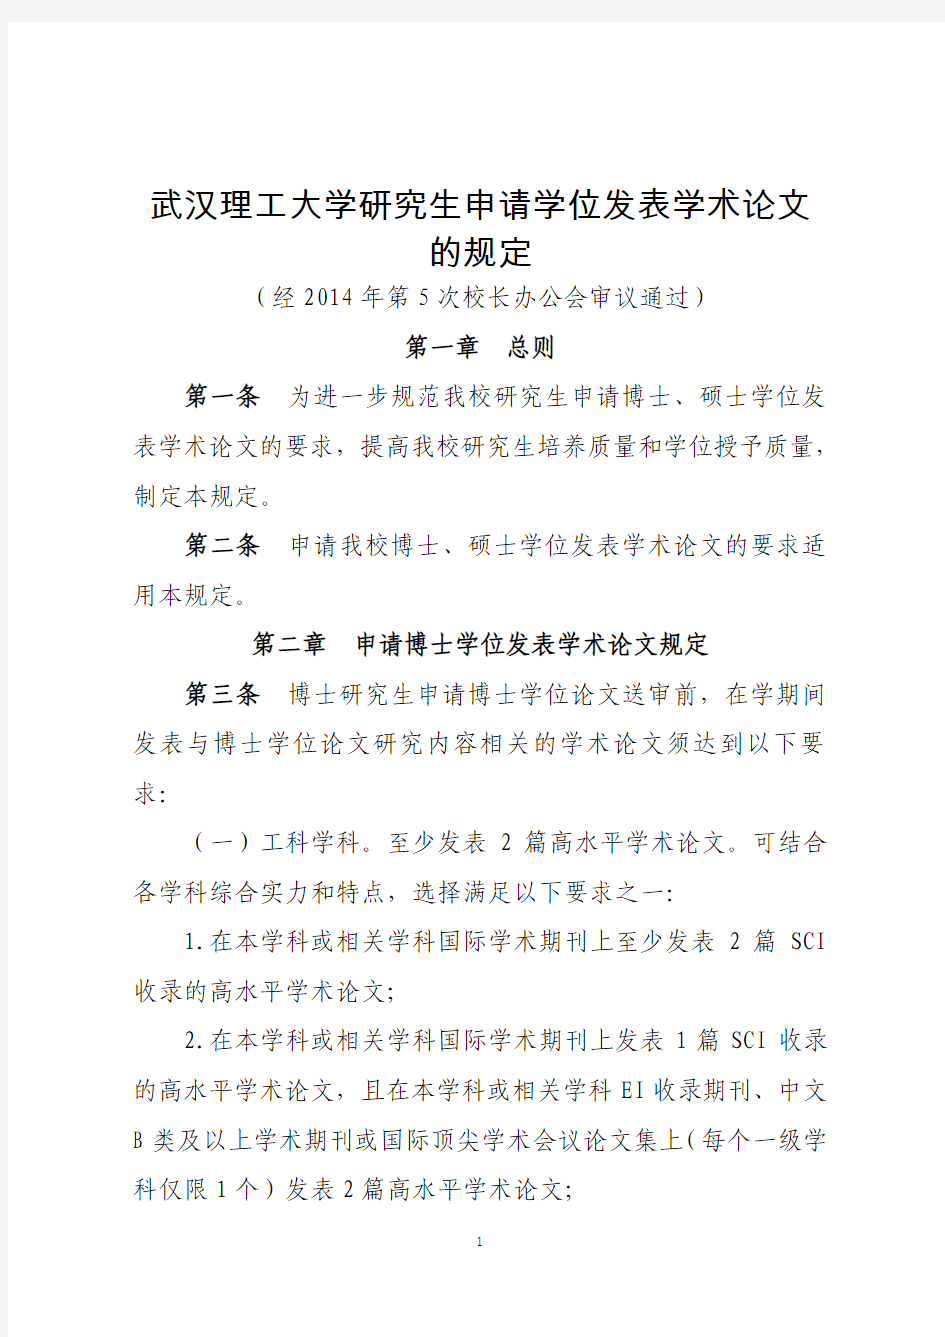 (2014级适用)武汉理工大学研究生申请学位发表学术论文的规定